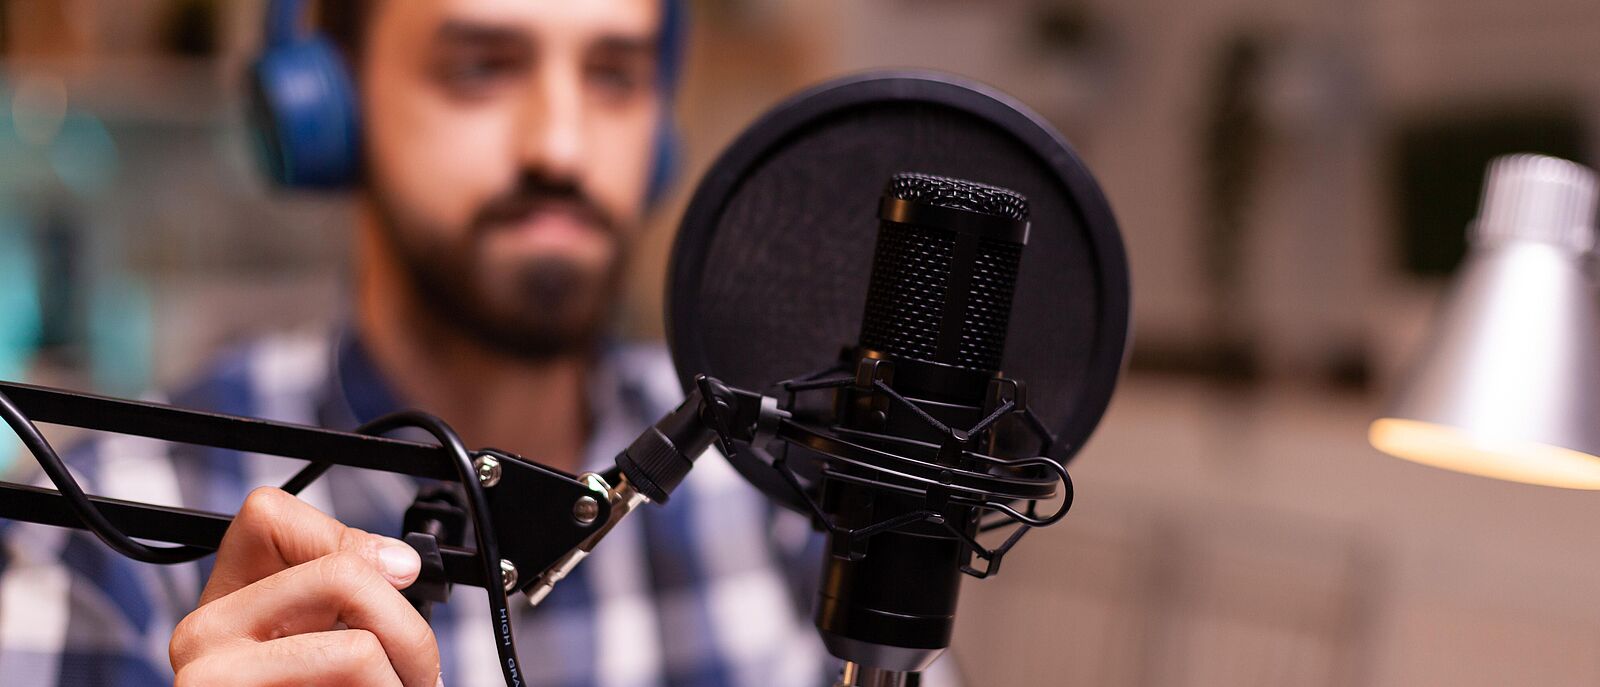 Eine Person sitzt in einem Aufnahmestudio, vor sich ein Aufnahmemikrofon welches er mit der rechten Hand zu sich schiebt.